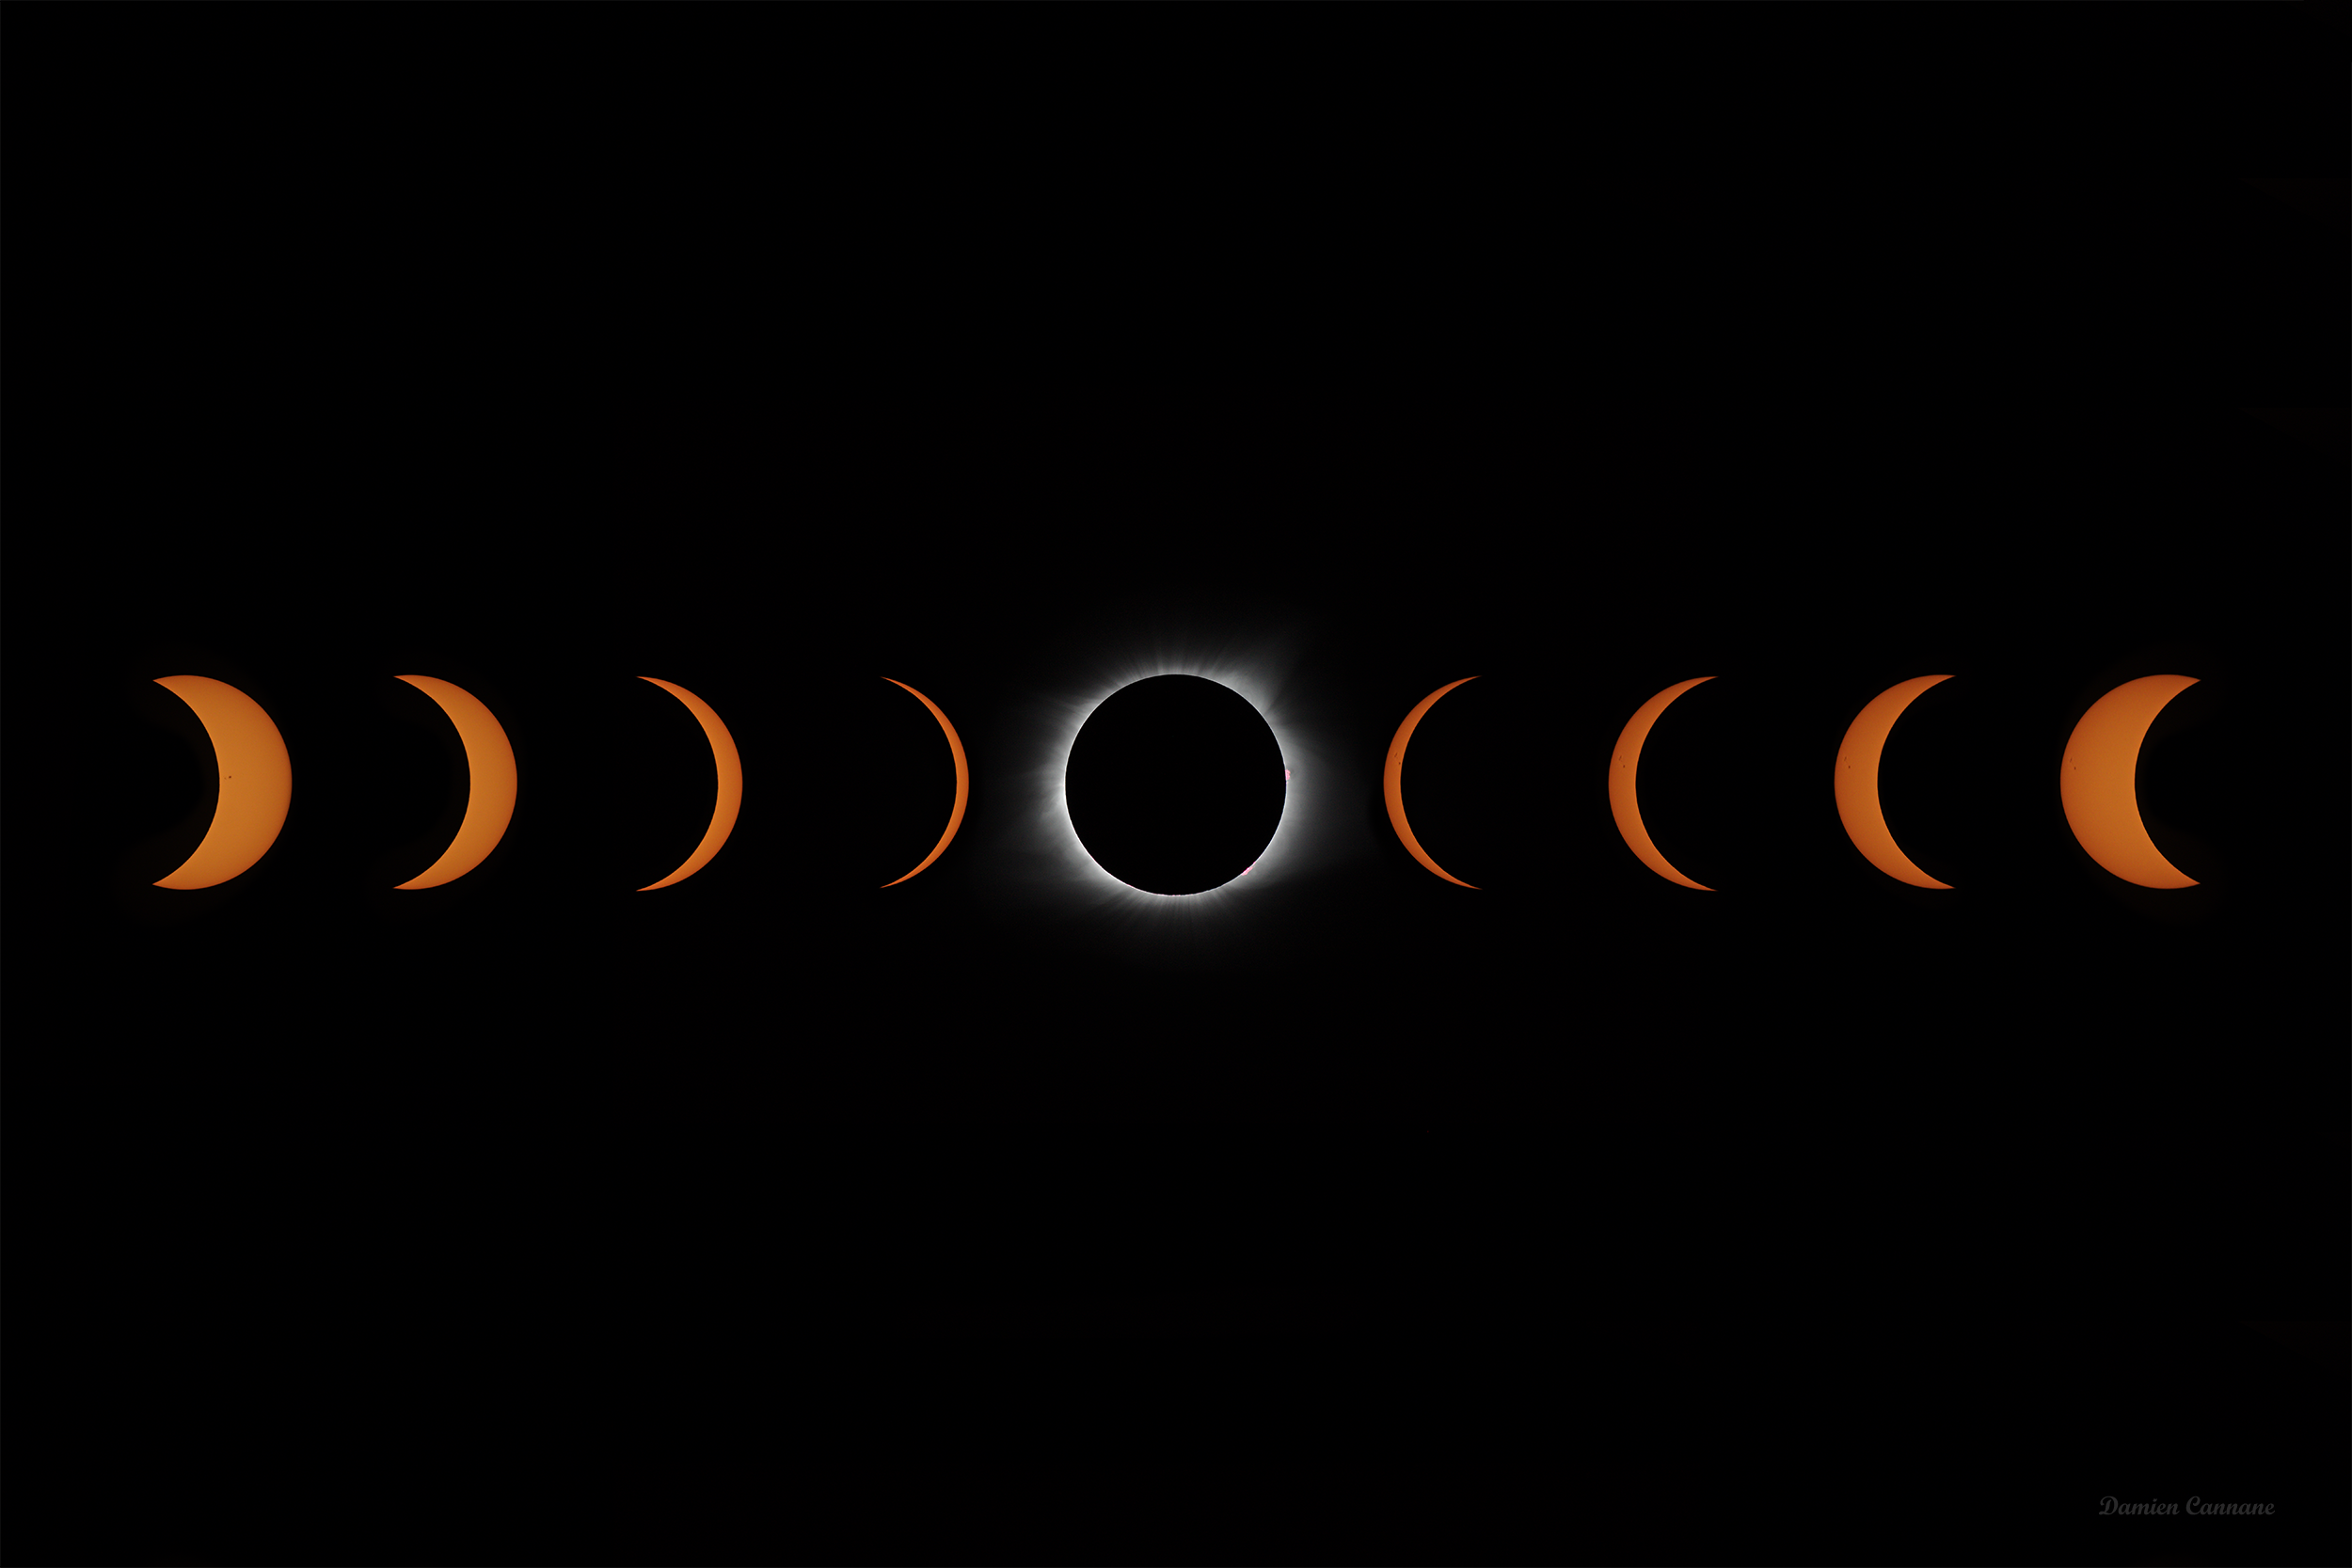 Eclipse Progression 18 x 12, 16 x 24 Social Media.png